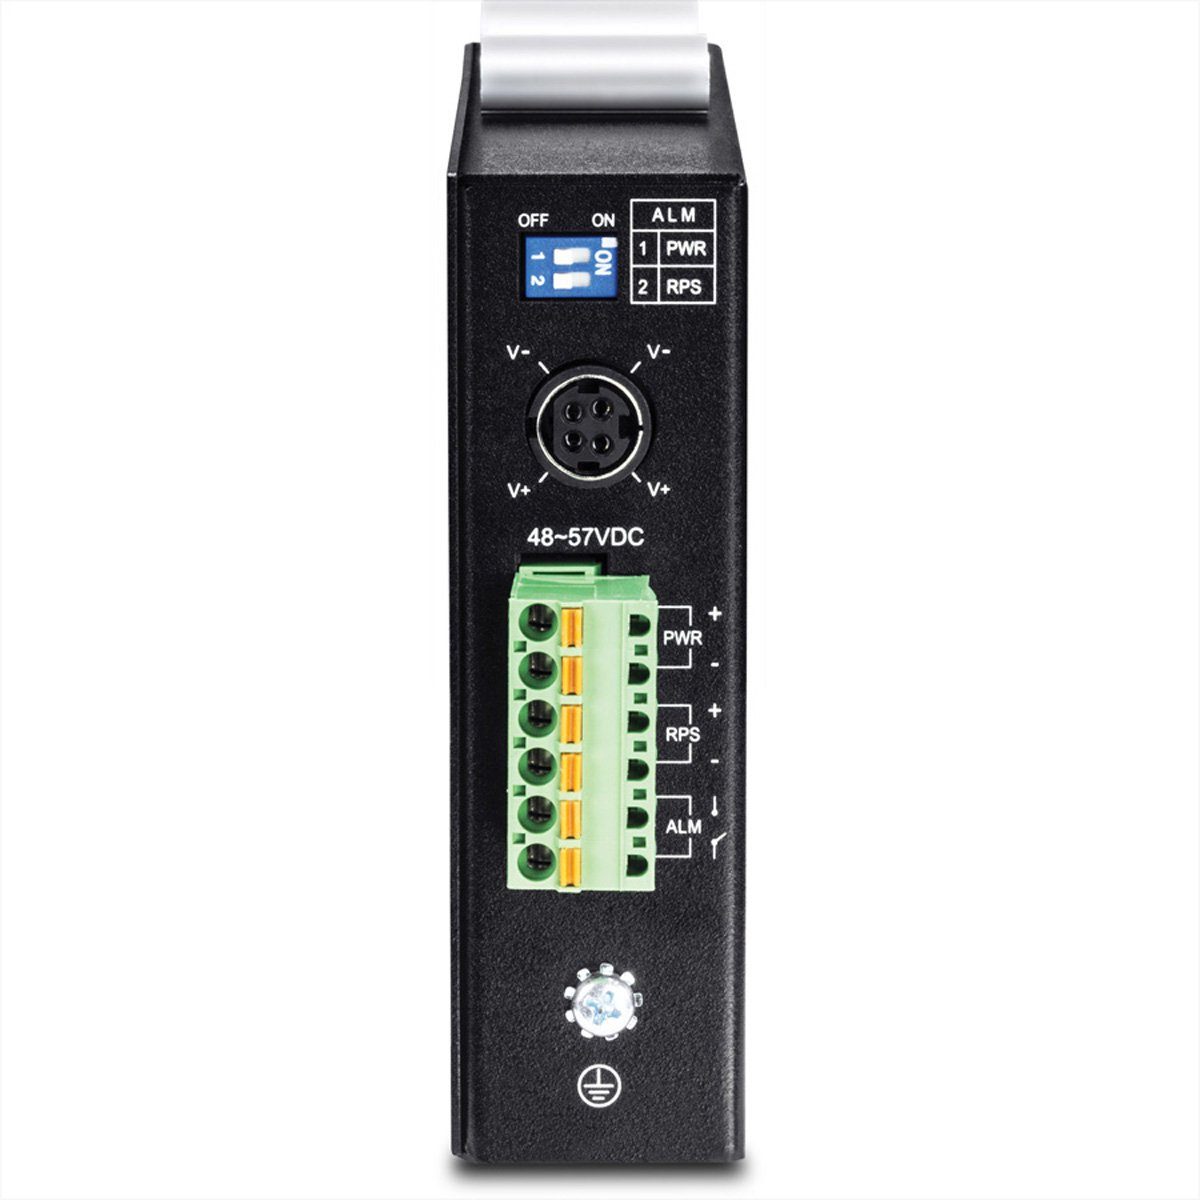 DIN-Rail Gigabit 6-Port 2 Layer PoE+ Switch TI-PG541i Trendnet Industrial Netzwerk-Switch